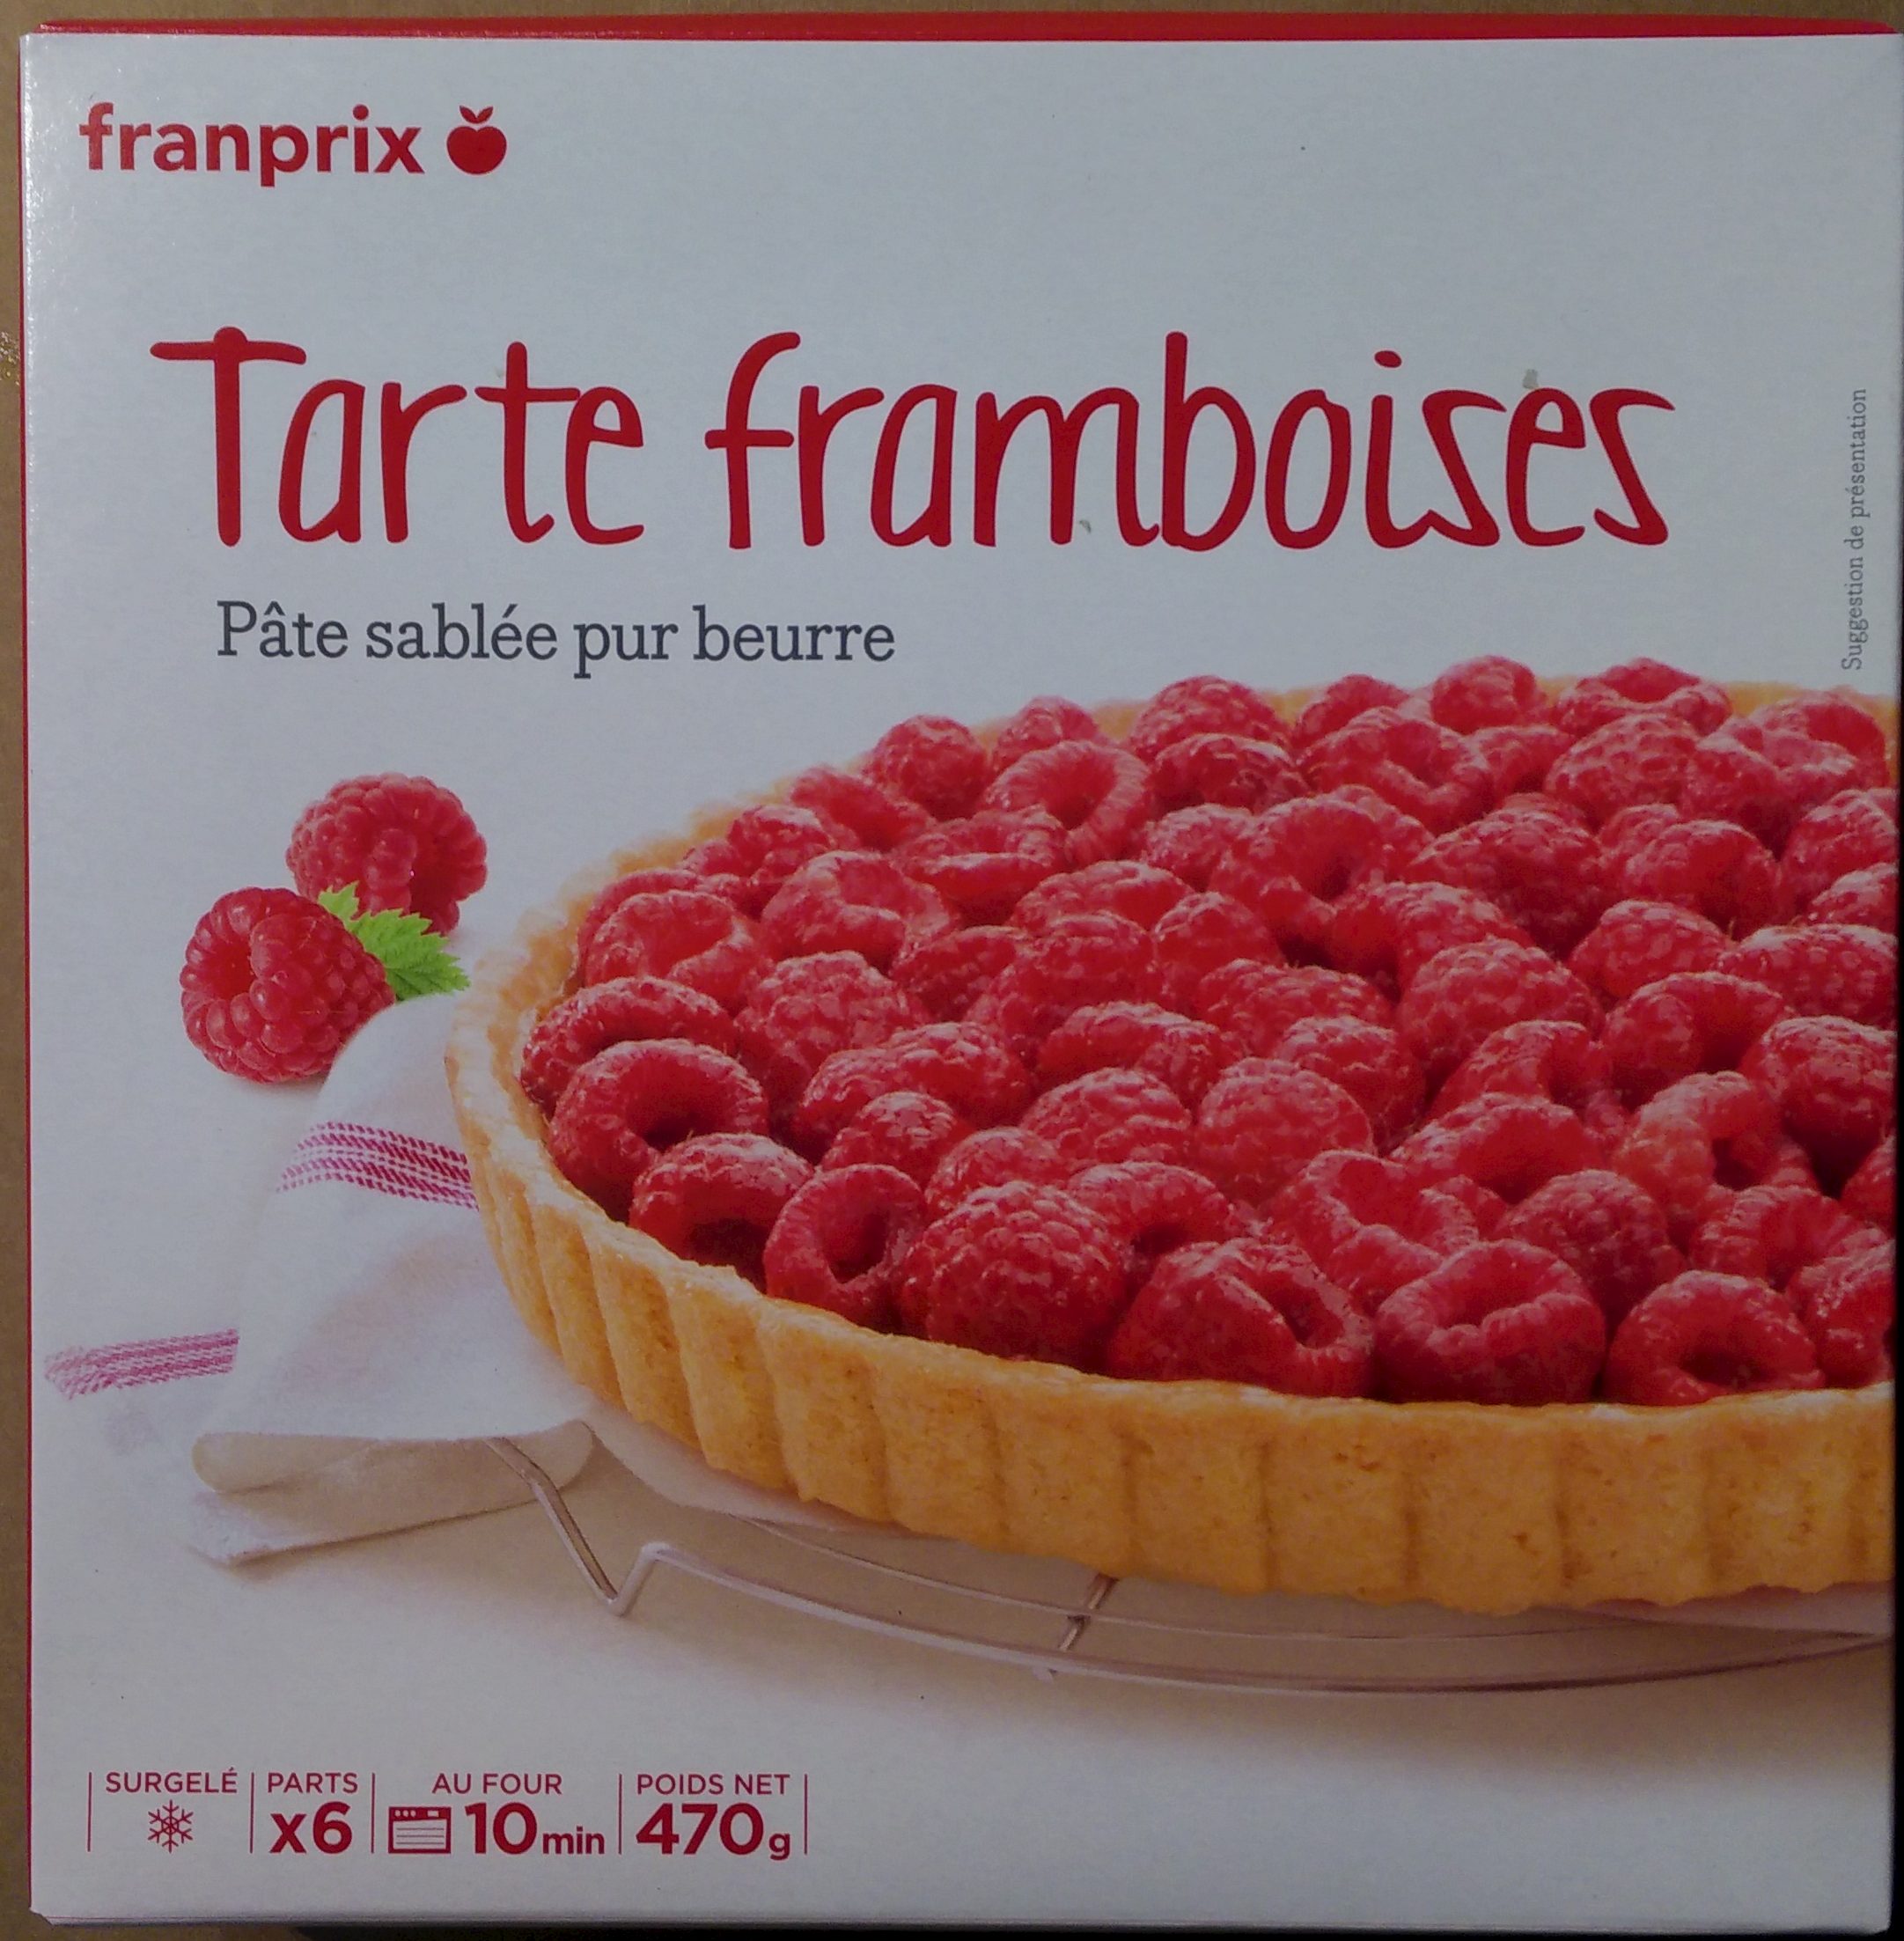 Tarte Framboises pâte sablée pur beurre - Product - fr